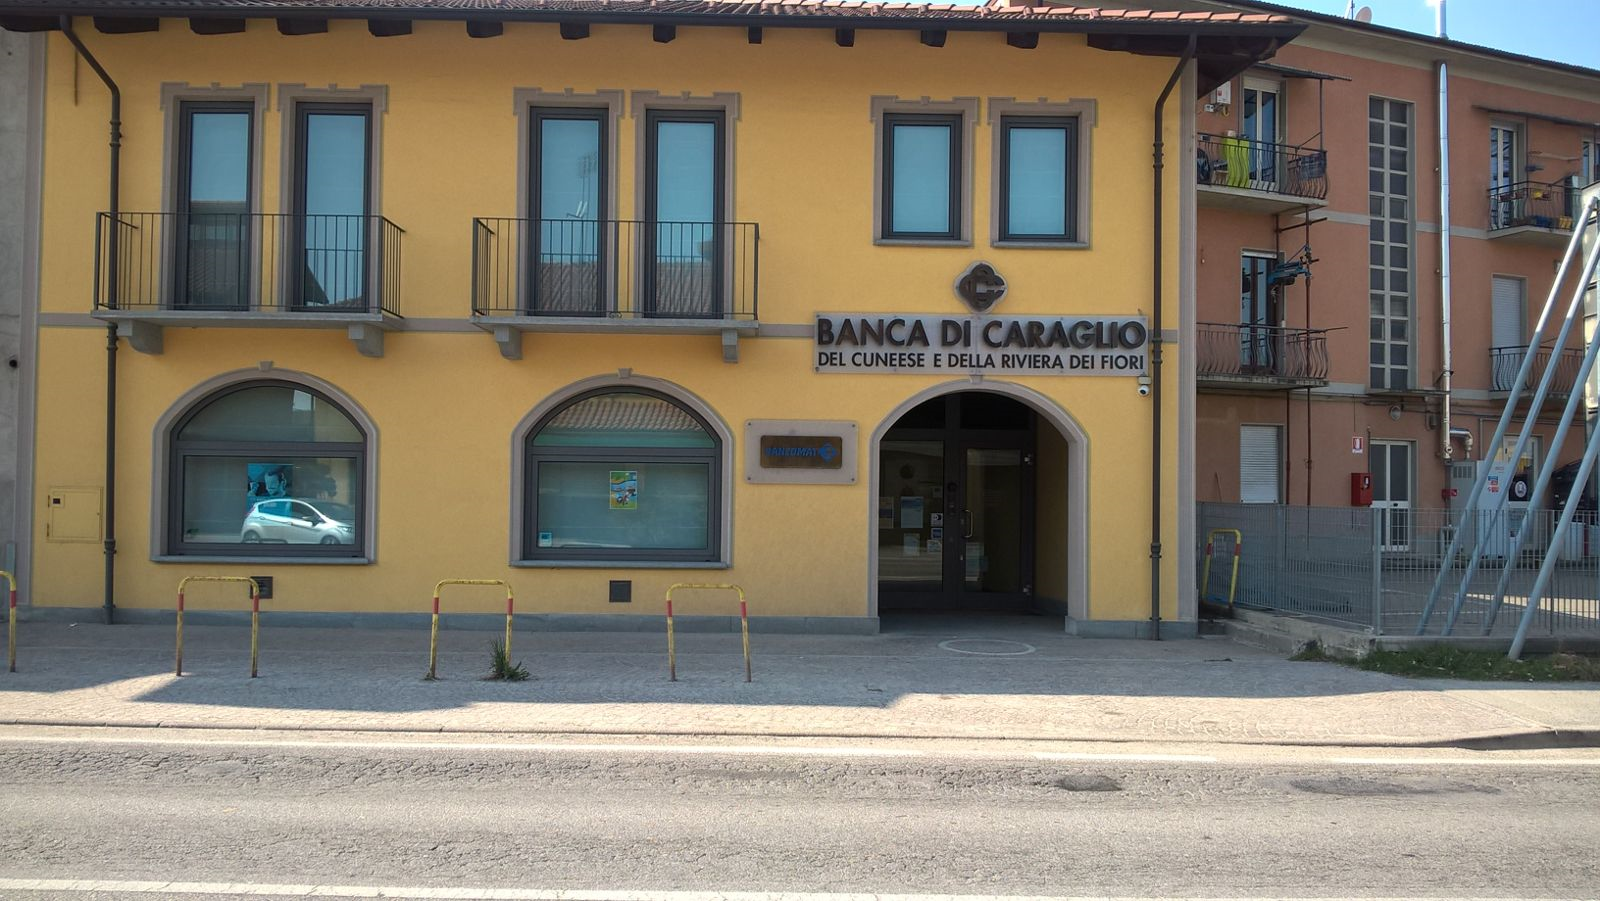 Cuneo Fr Madonna Dell Olmo Banca Di Caraglio